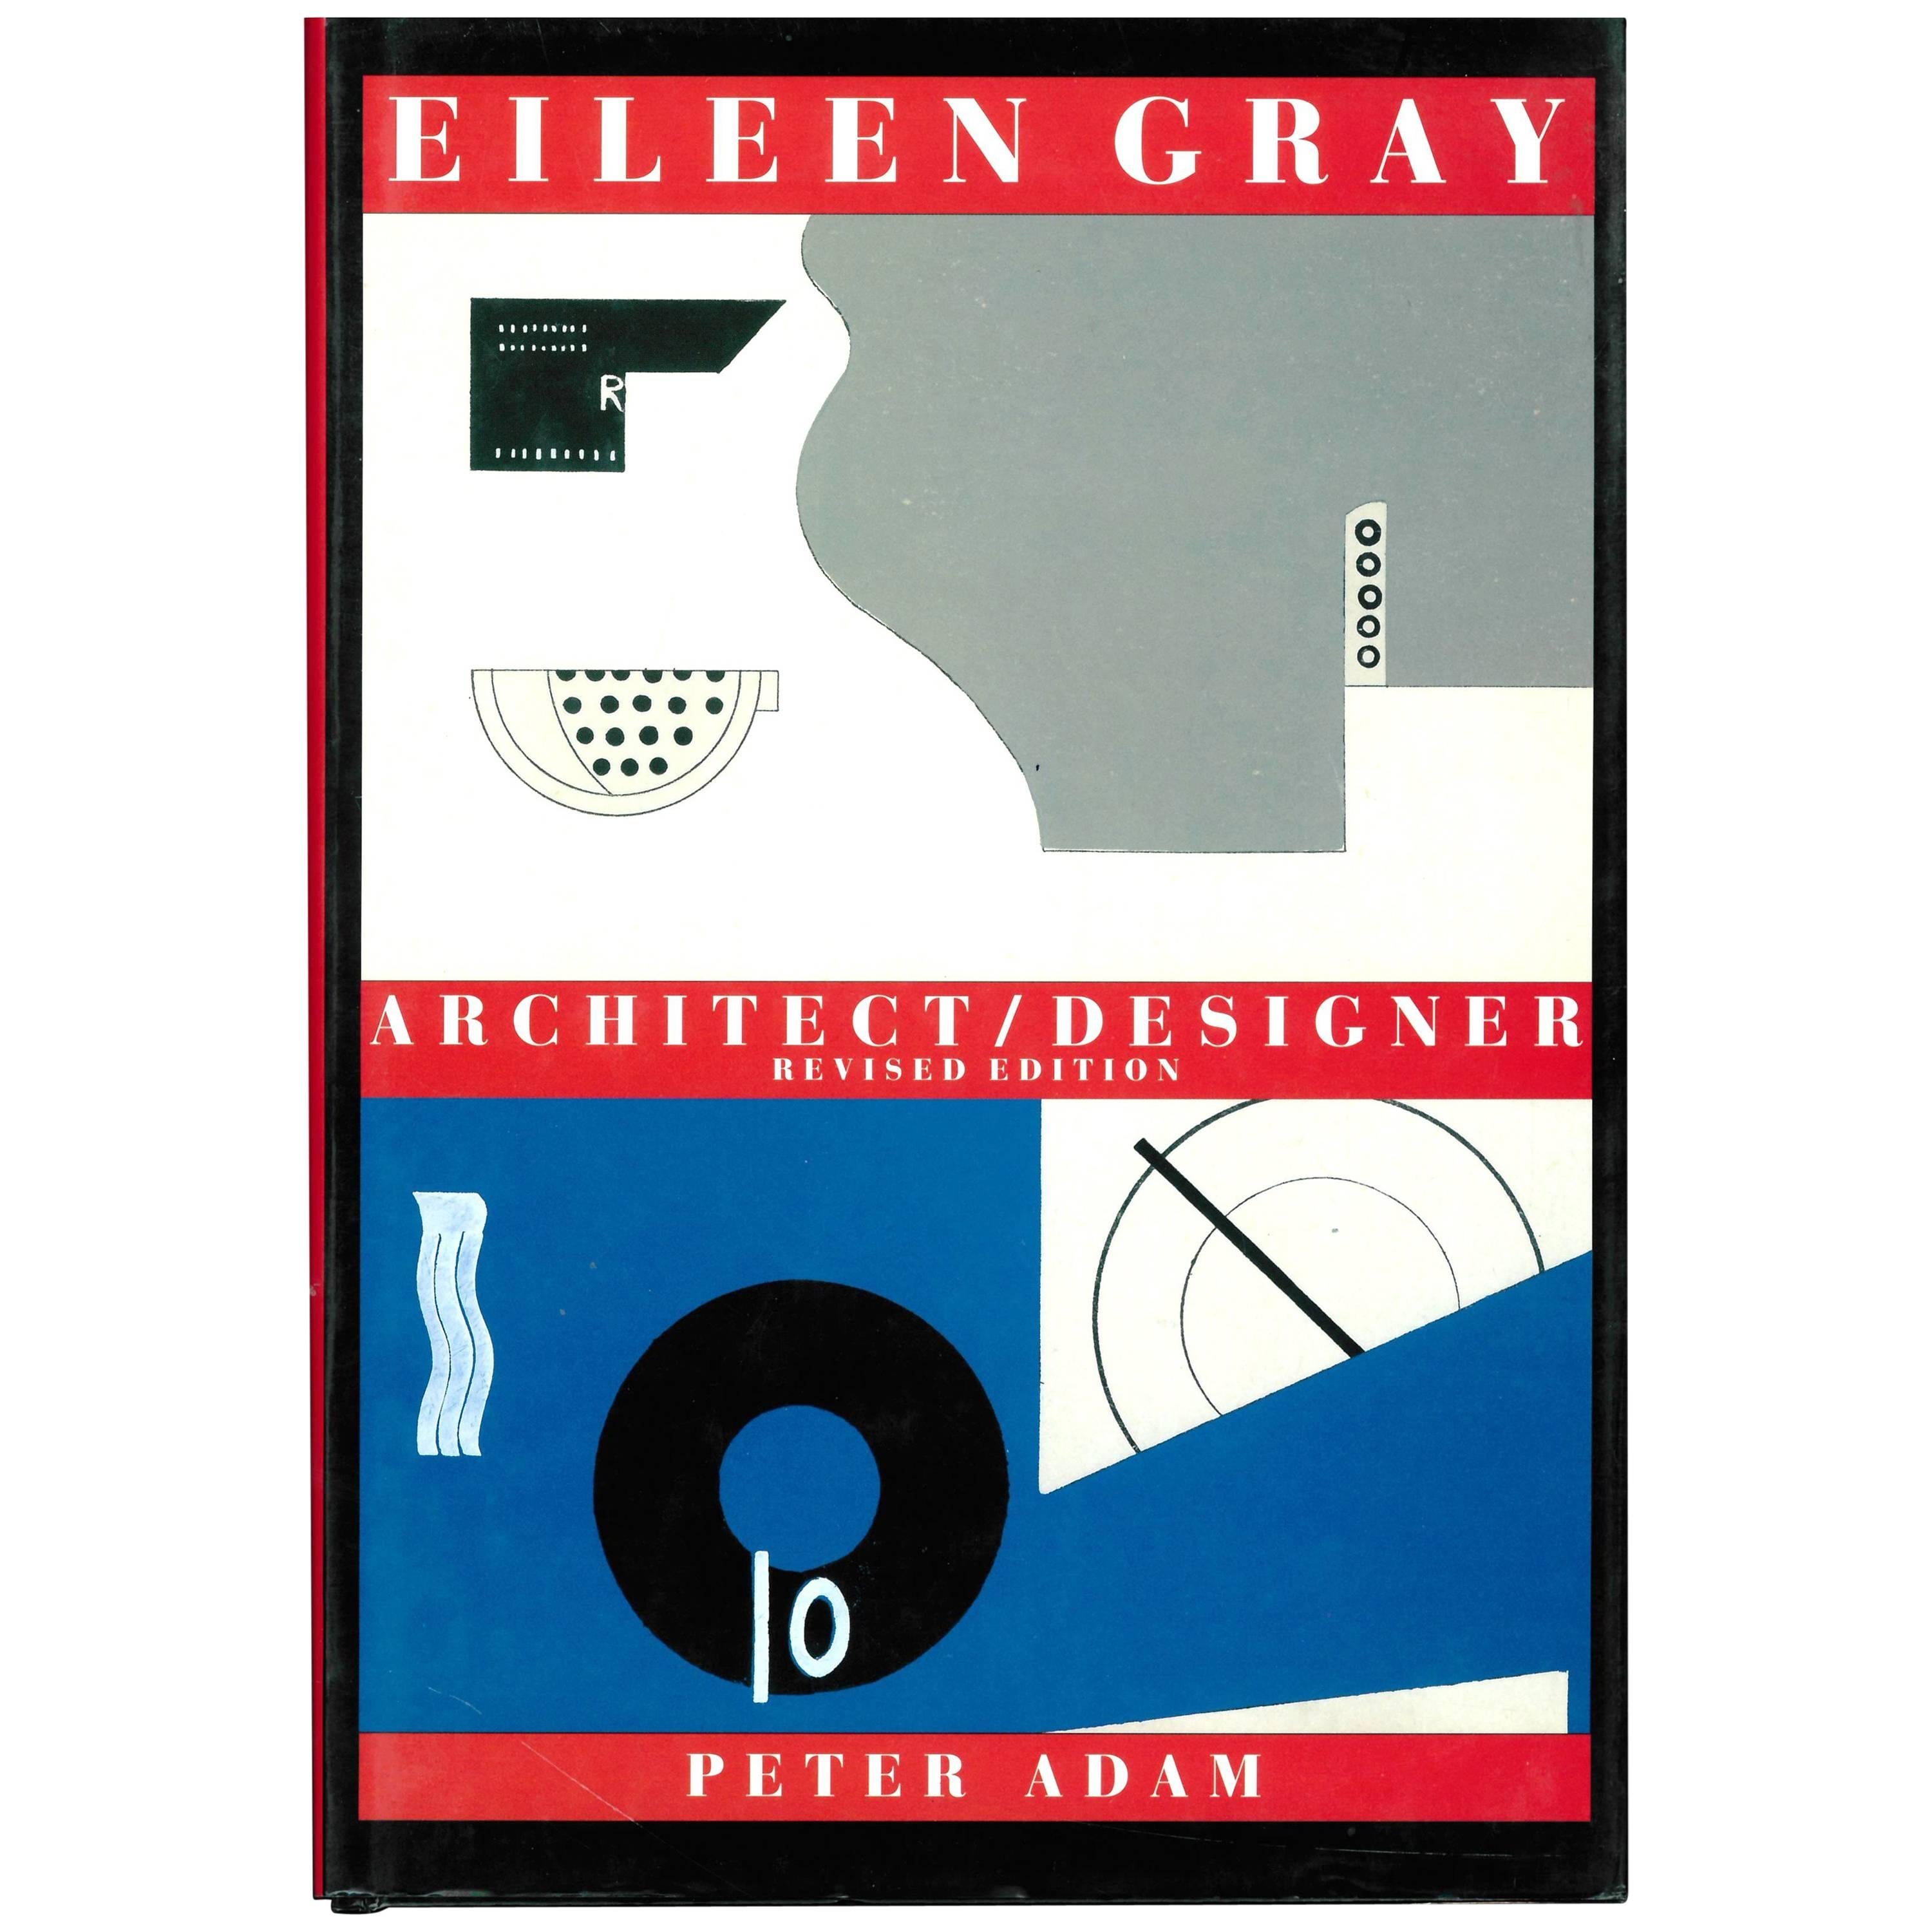 Eileen Gray, Architect/Designer 'Book'